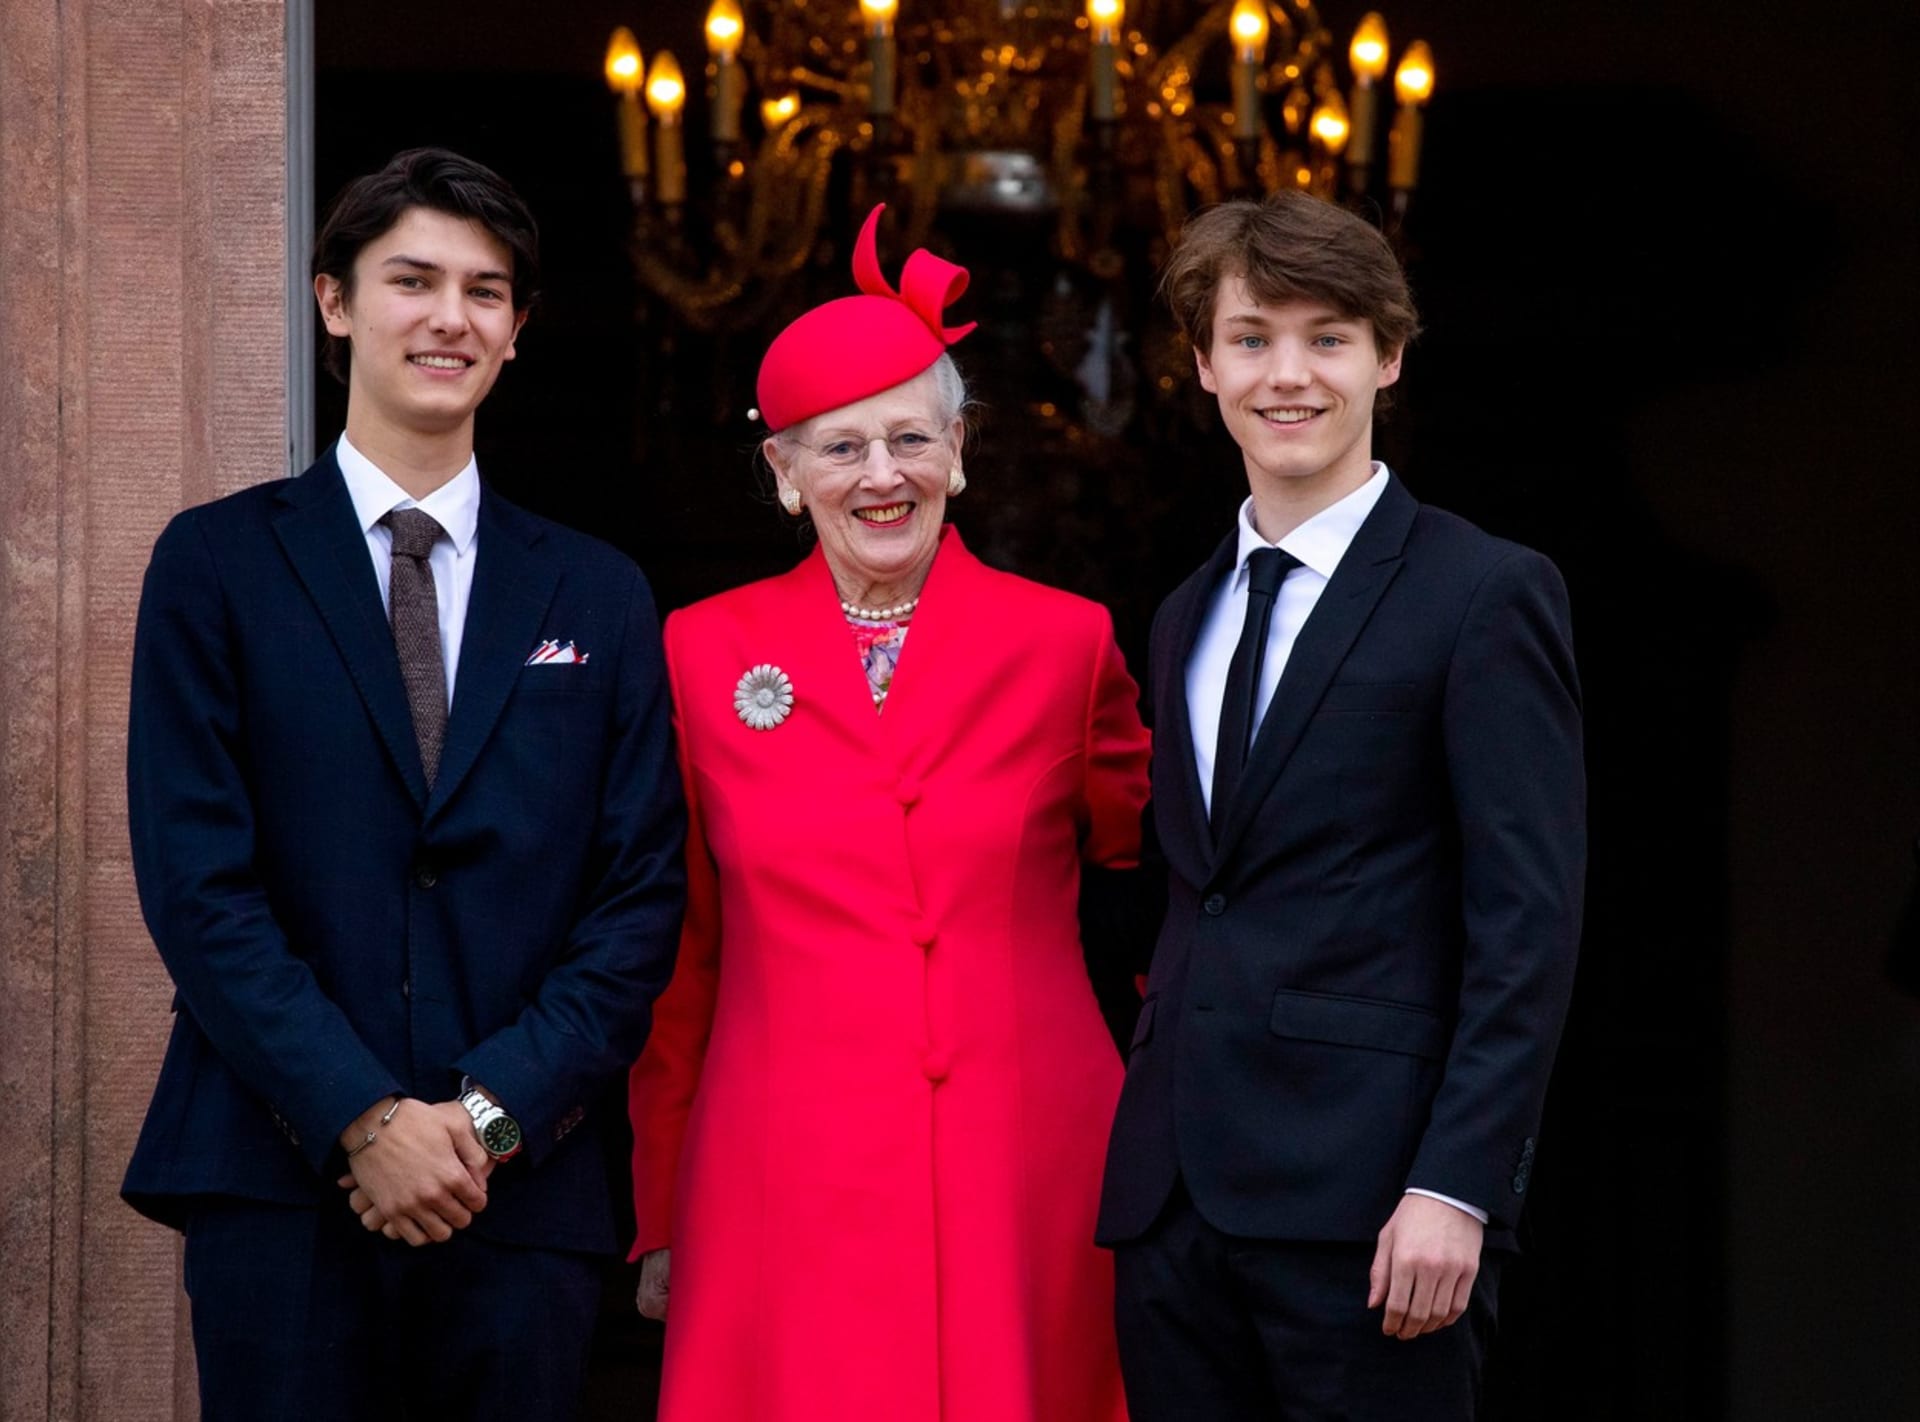 Dánská královna Markéta II. s vnuky Nikolaiem a Felixem (vpravo). Oba přišli o své tituly.